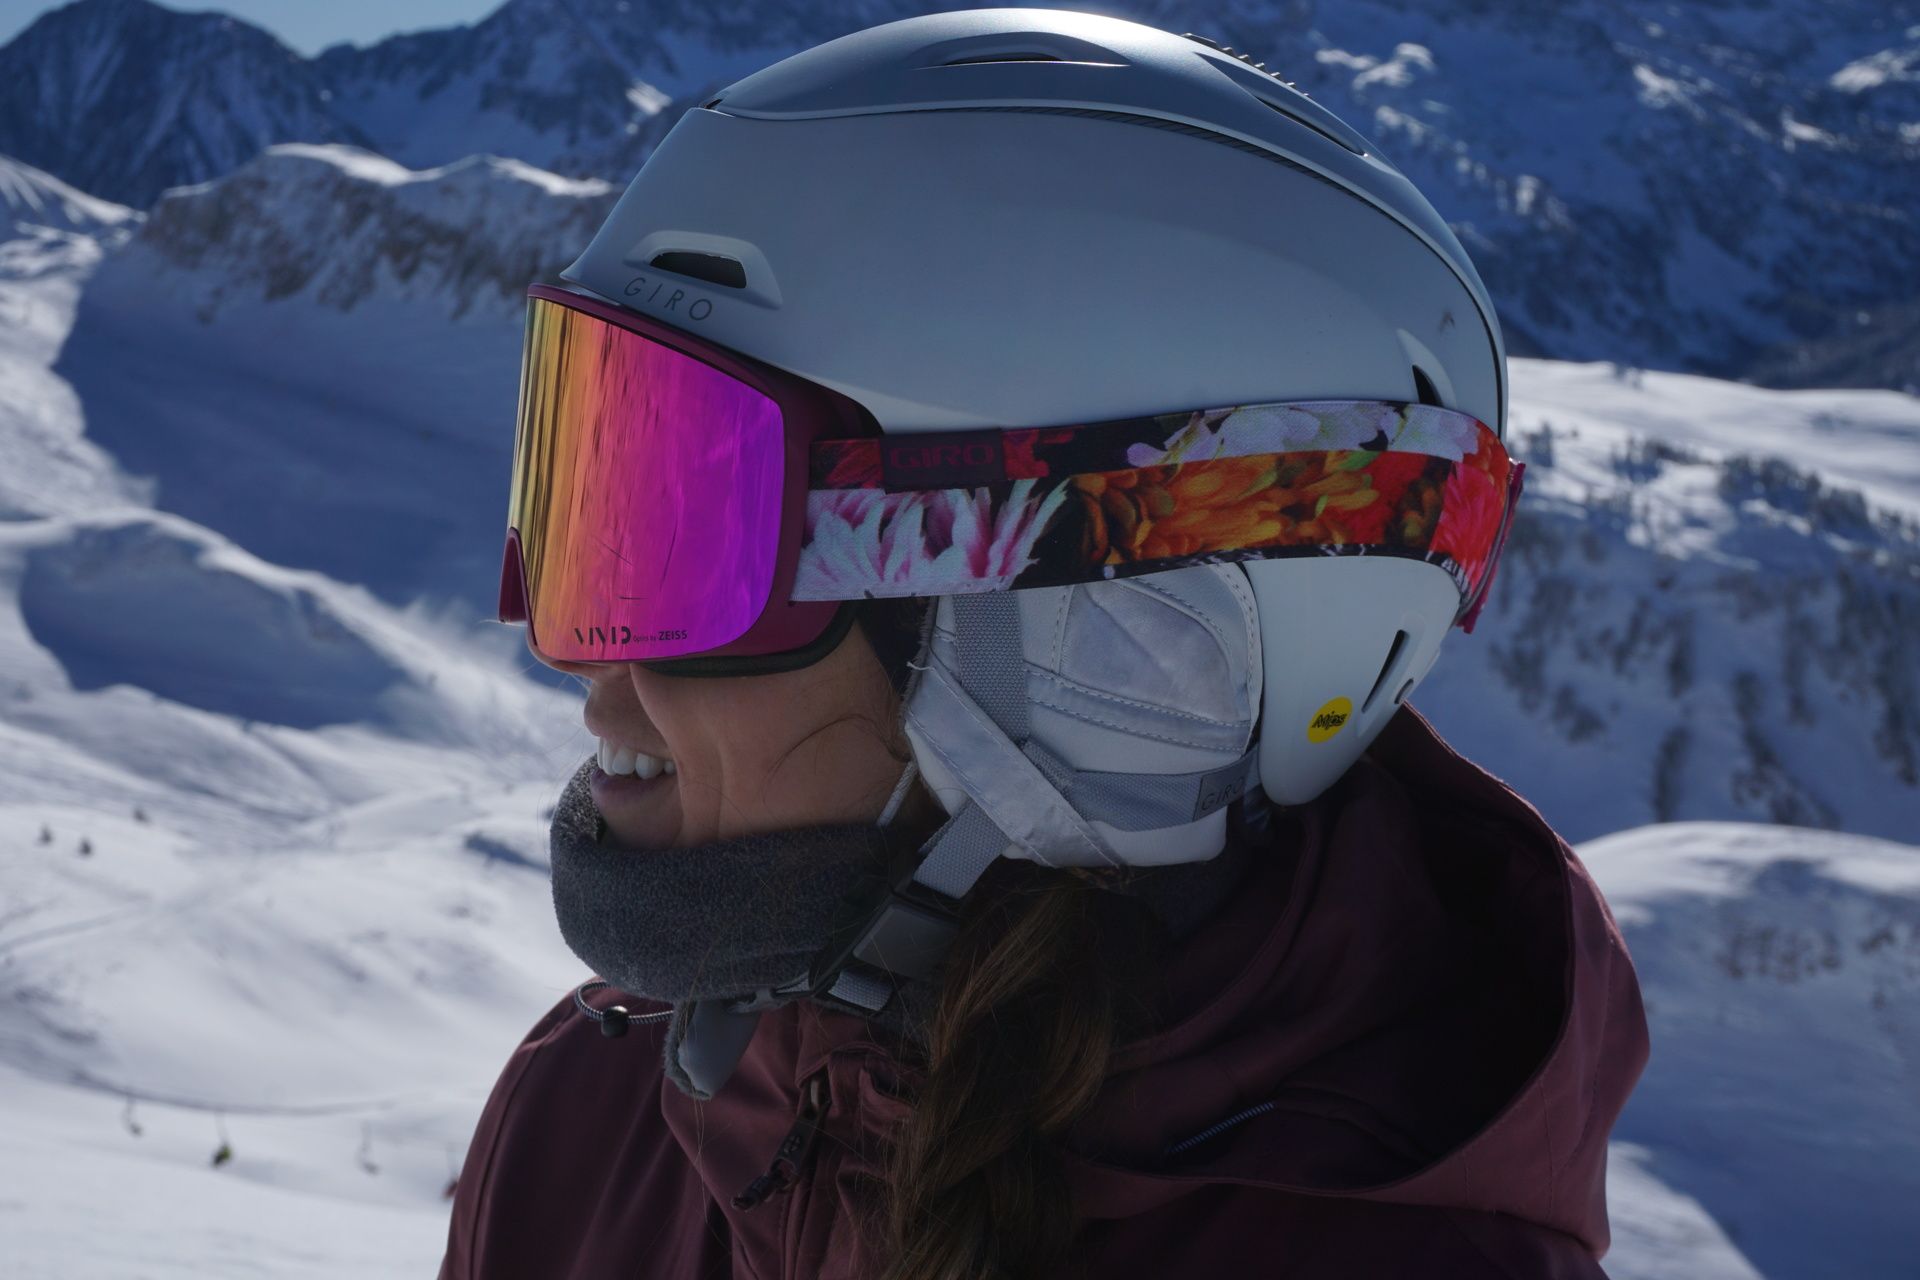 Perspicaz Ortografía Discriminatorio Mi casco y gafas de esta temporada. Giro Snow. - - Nevasport.com